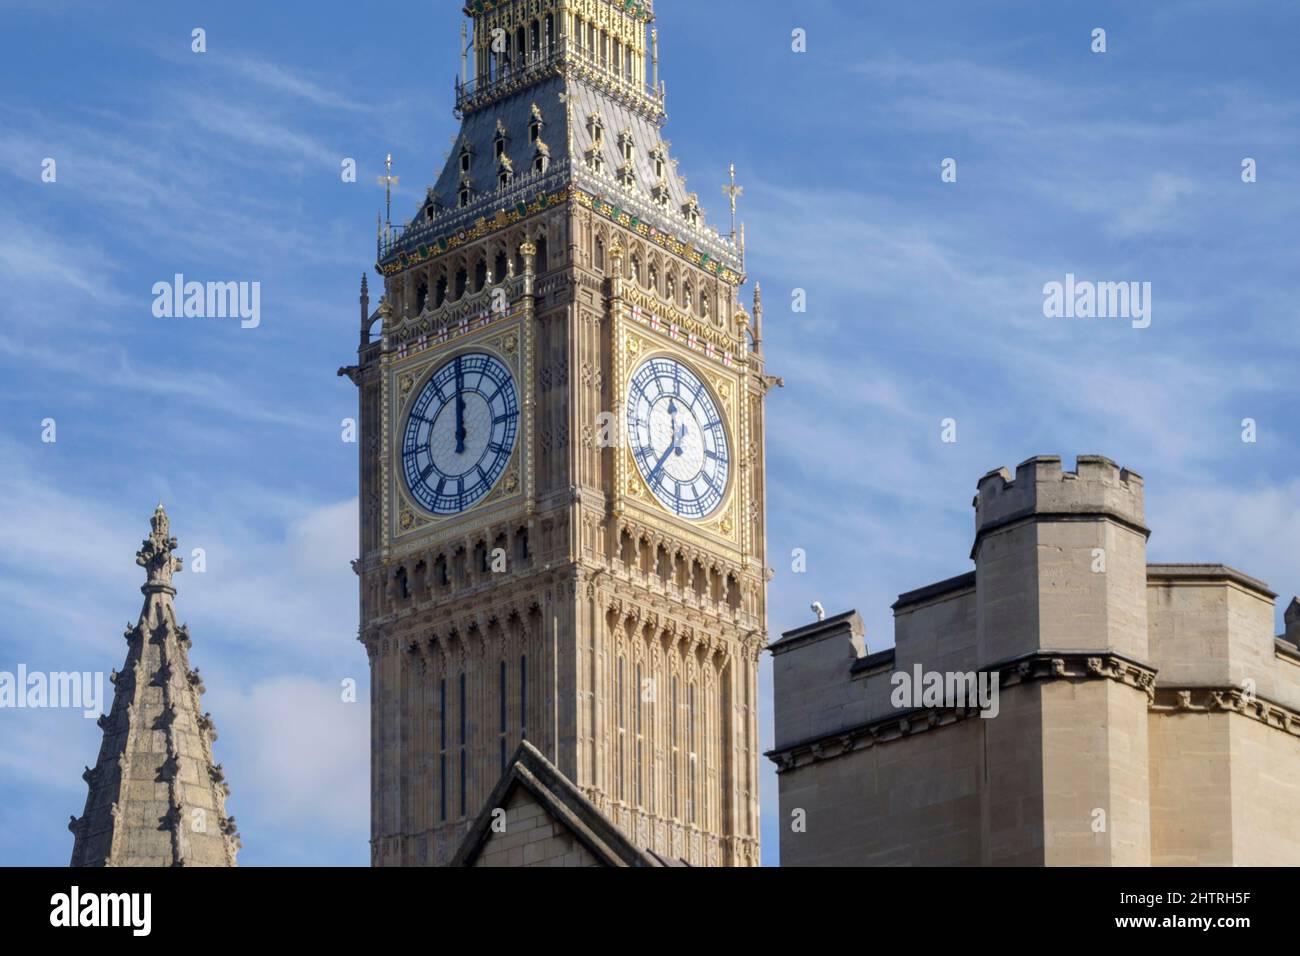 Die Westwand der Big Ben-Uhr stoppte um 12 Uhr, um Wartungsarbeiten durchführen zu können. Stockfoto